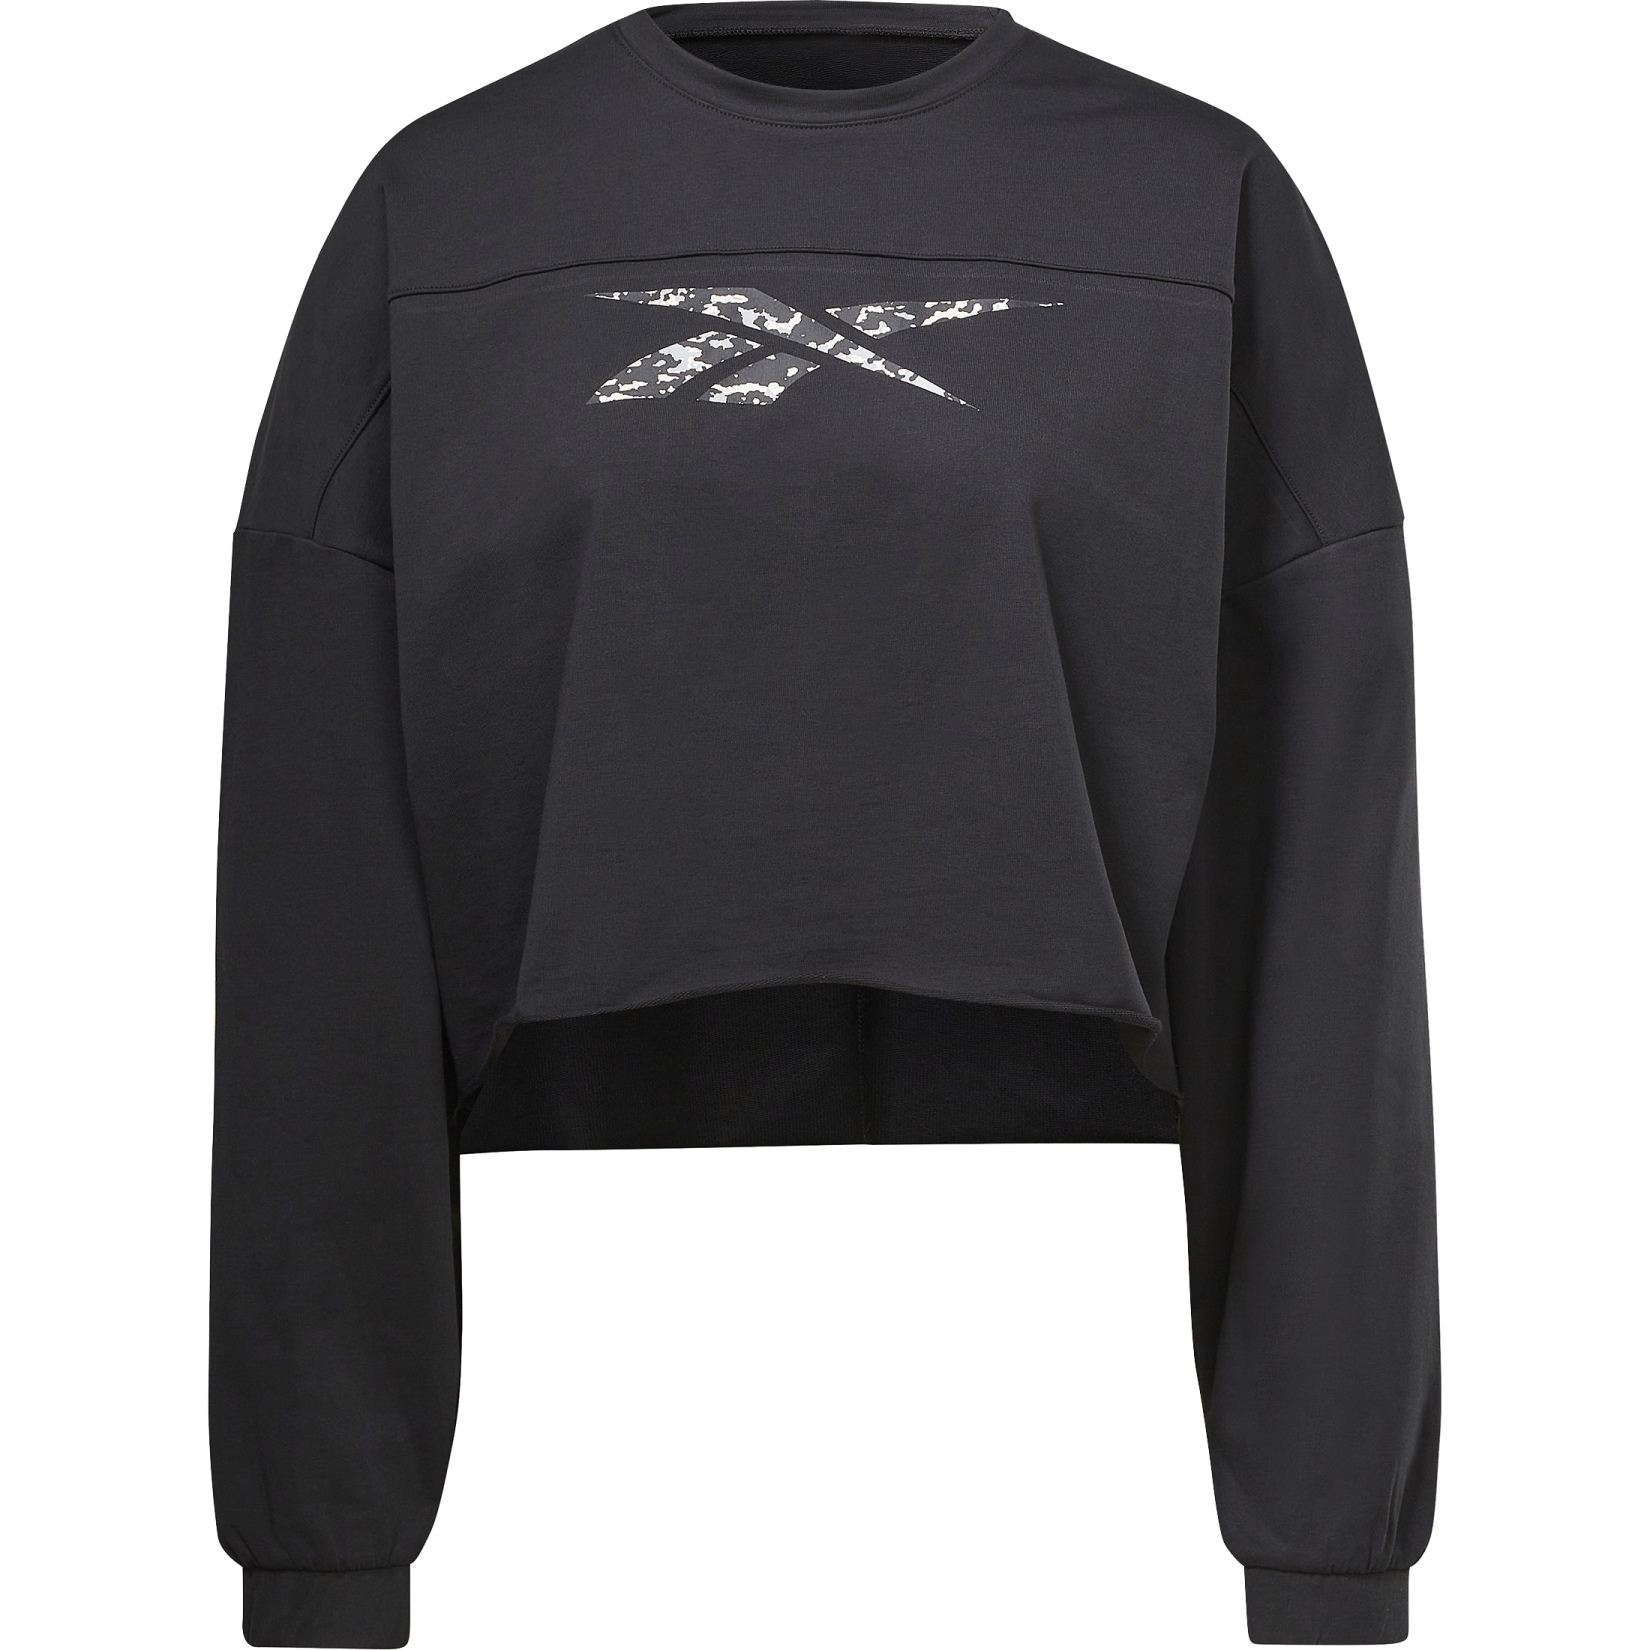 Produktbild von Reebok Modern Safari Damen Sweatshirt - schwarz